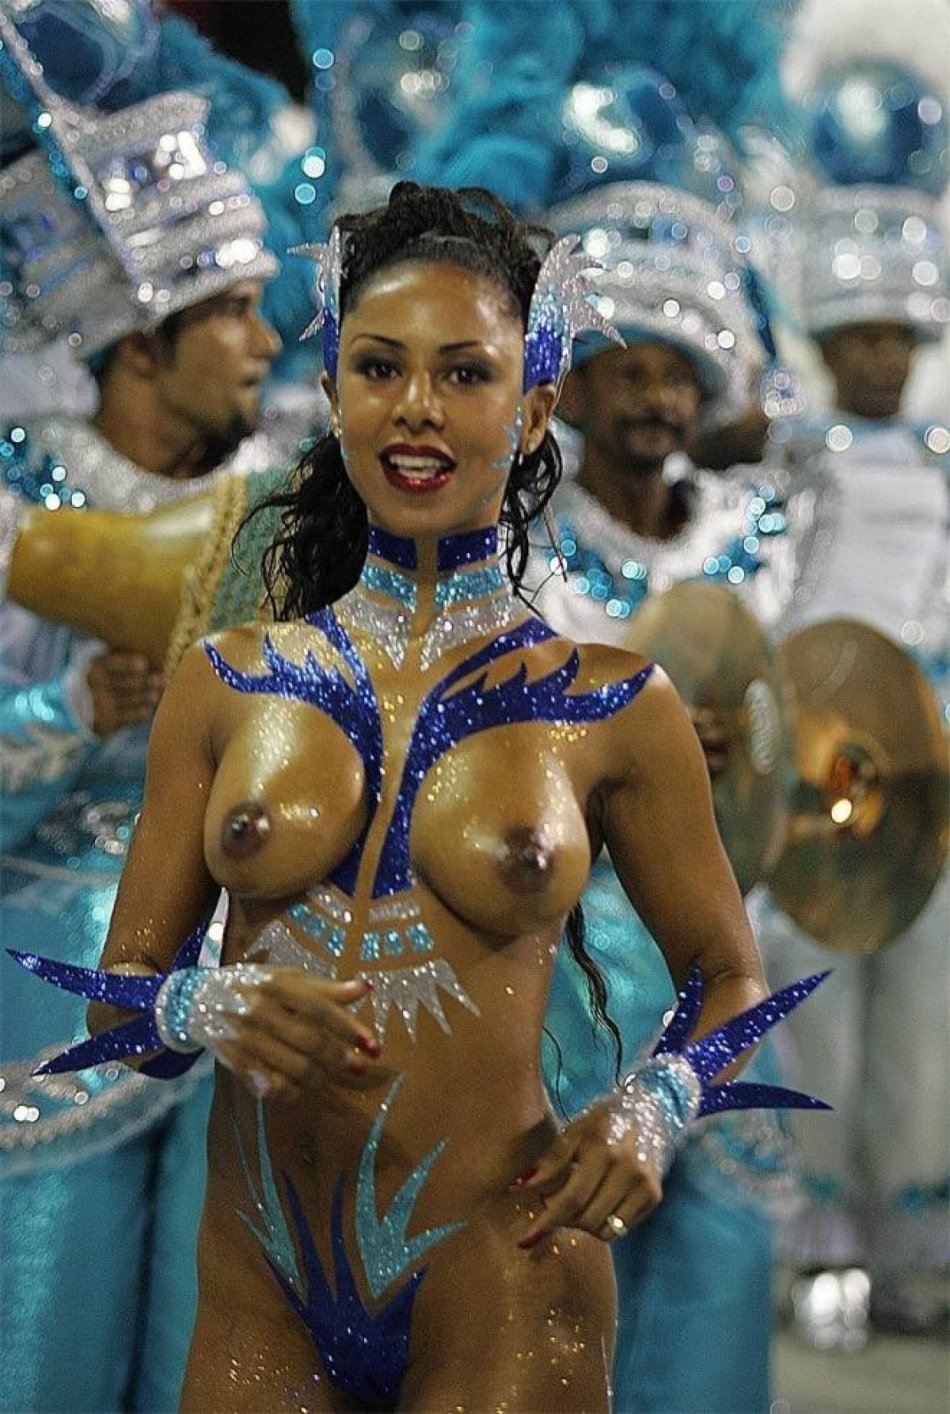 бразильский карнавал с голыми титьками